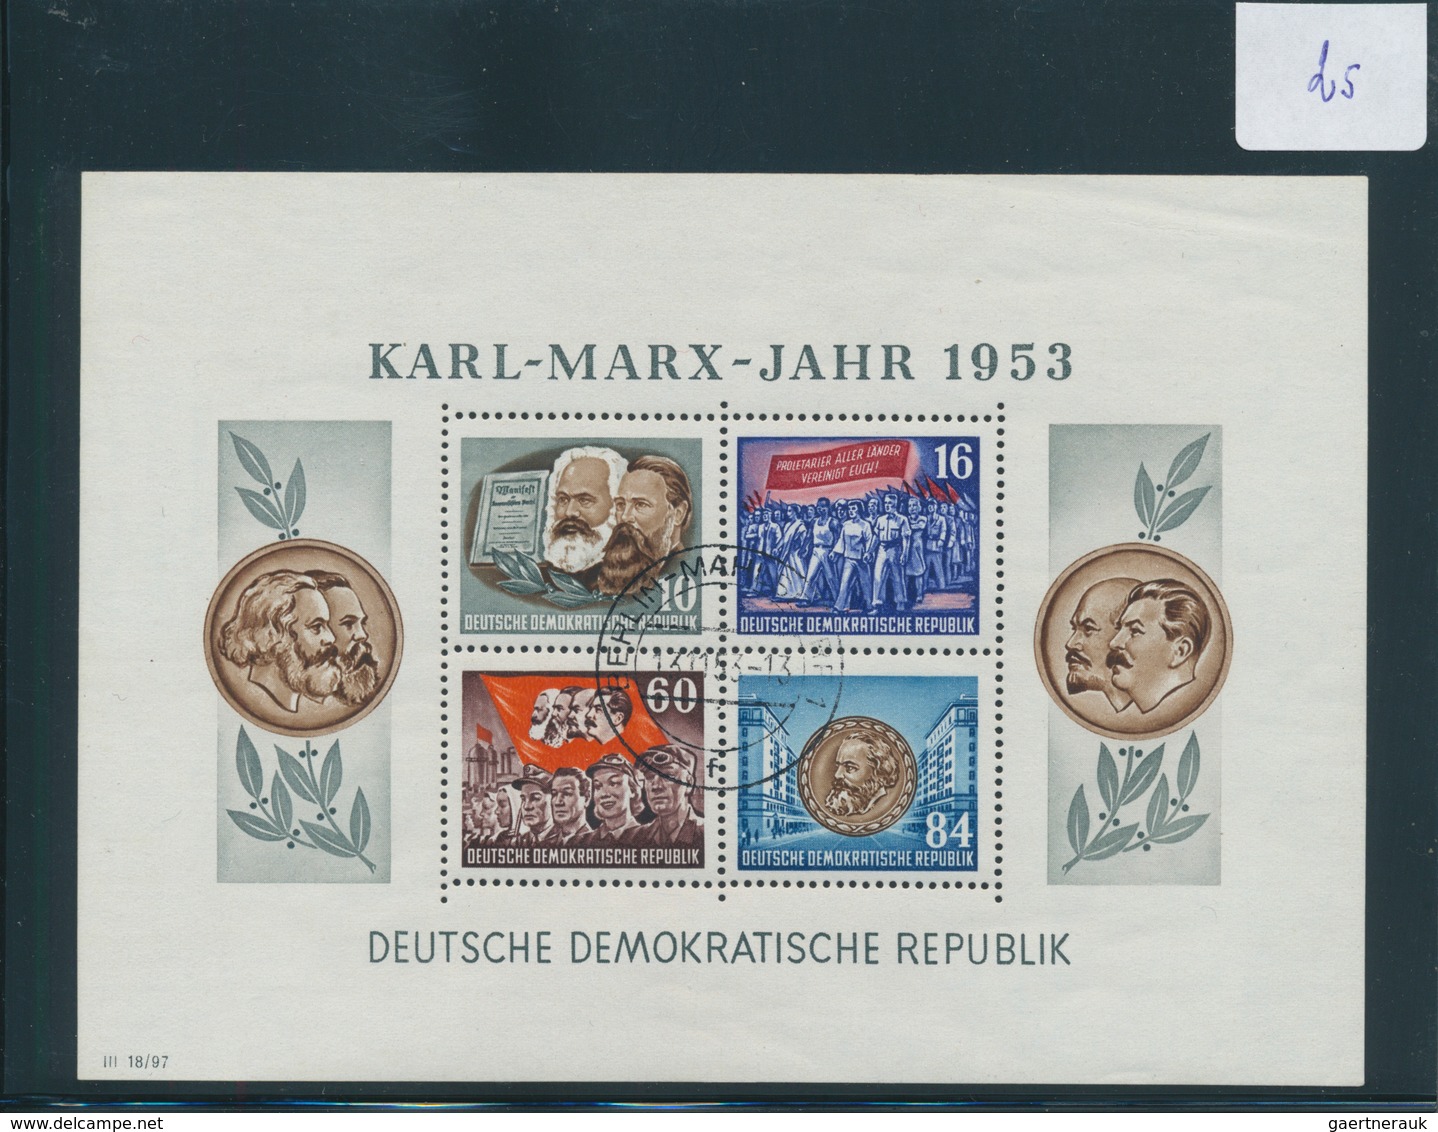 32160 Deutschland nach 1945: 1946/1953, Zusammenstellung auf Steckkarten, dabei Lokalausgaben Spremberg ge